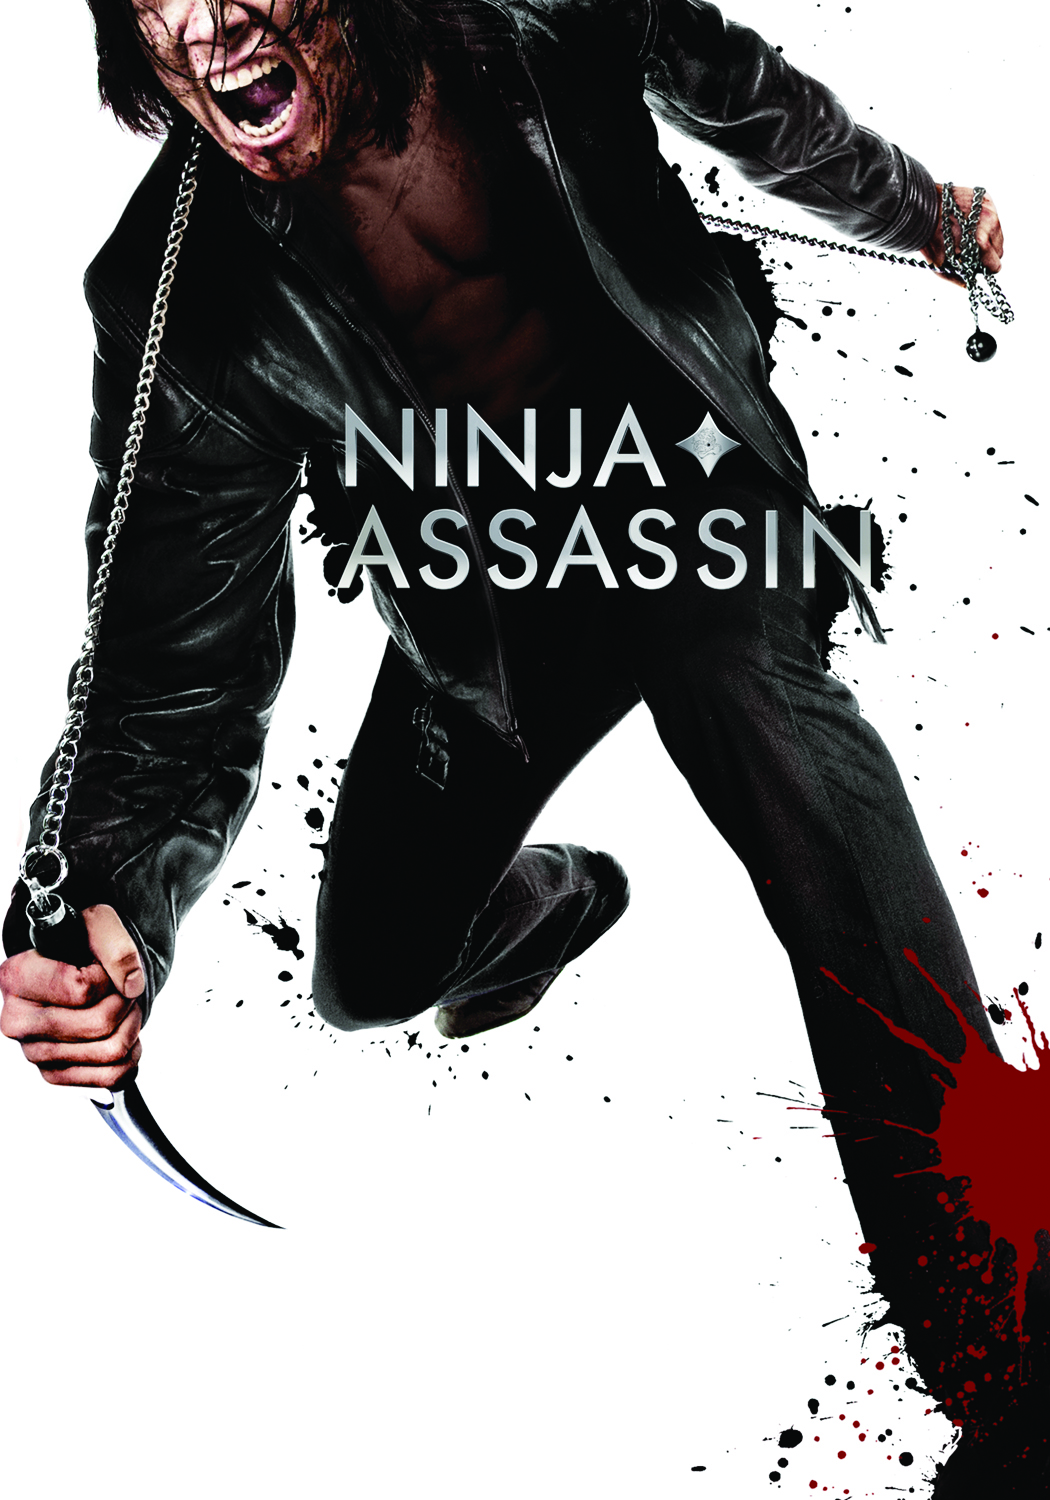 Review: Ninja Assassin